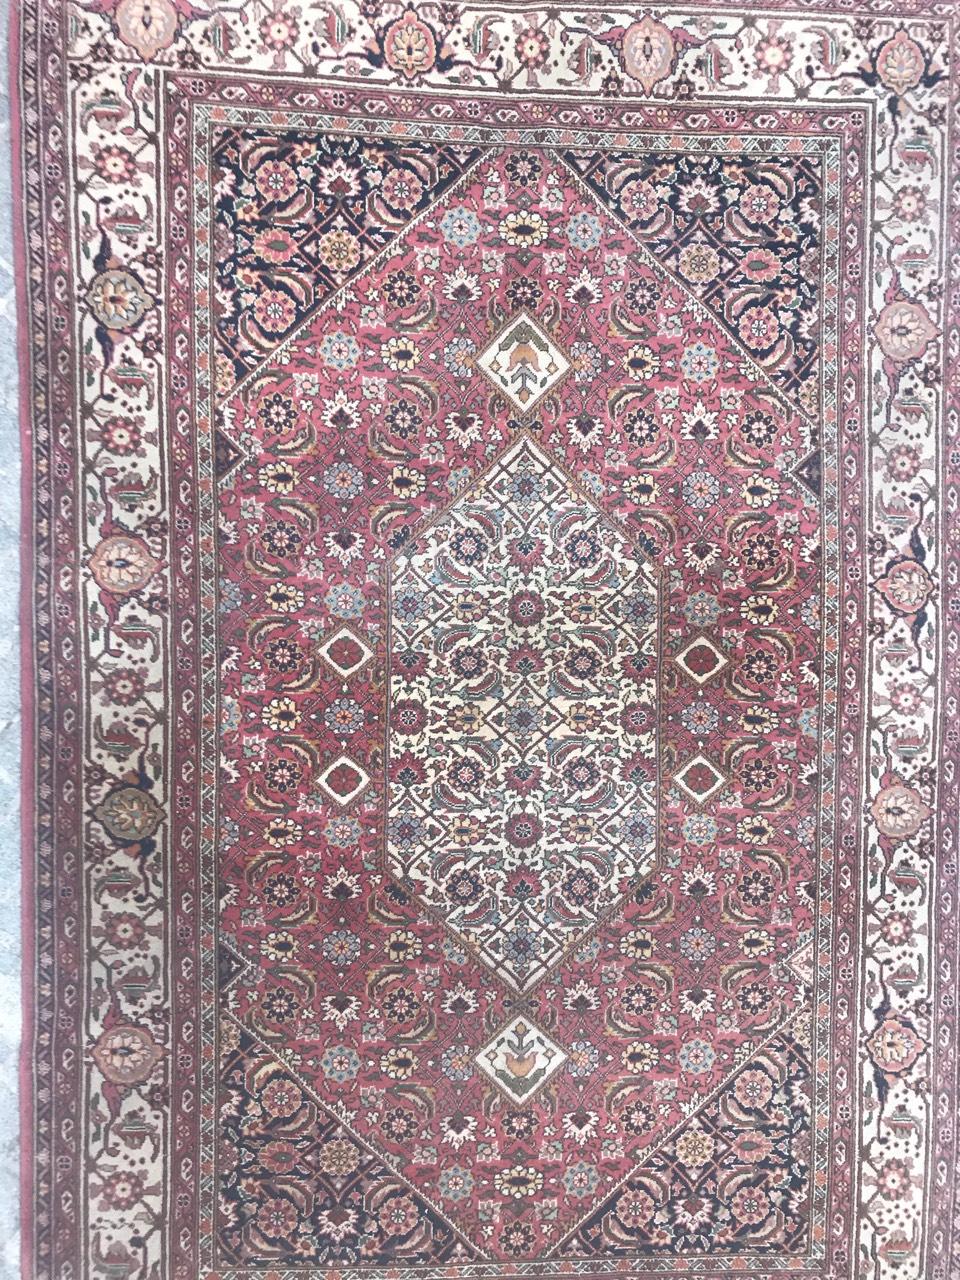 Entdecken Sie die Eleganz dieses exquisiten Teppichs aus dem 20. Jahrhundert mit einem bezaubernden Muster im Tabriz-Stil auf einem schönen rosa Feld, das mit Blau- und Grüntönen verziert ist. Der mit Präzision handgeknüpfte Wollsamt auf